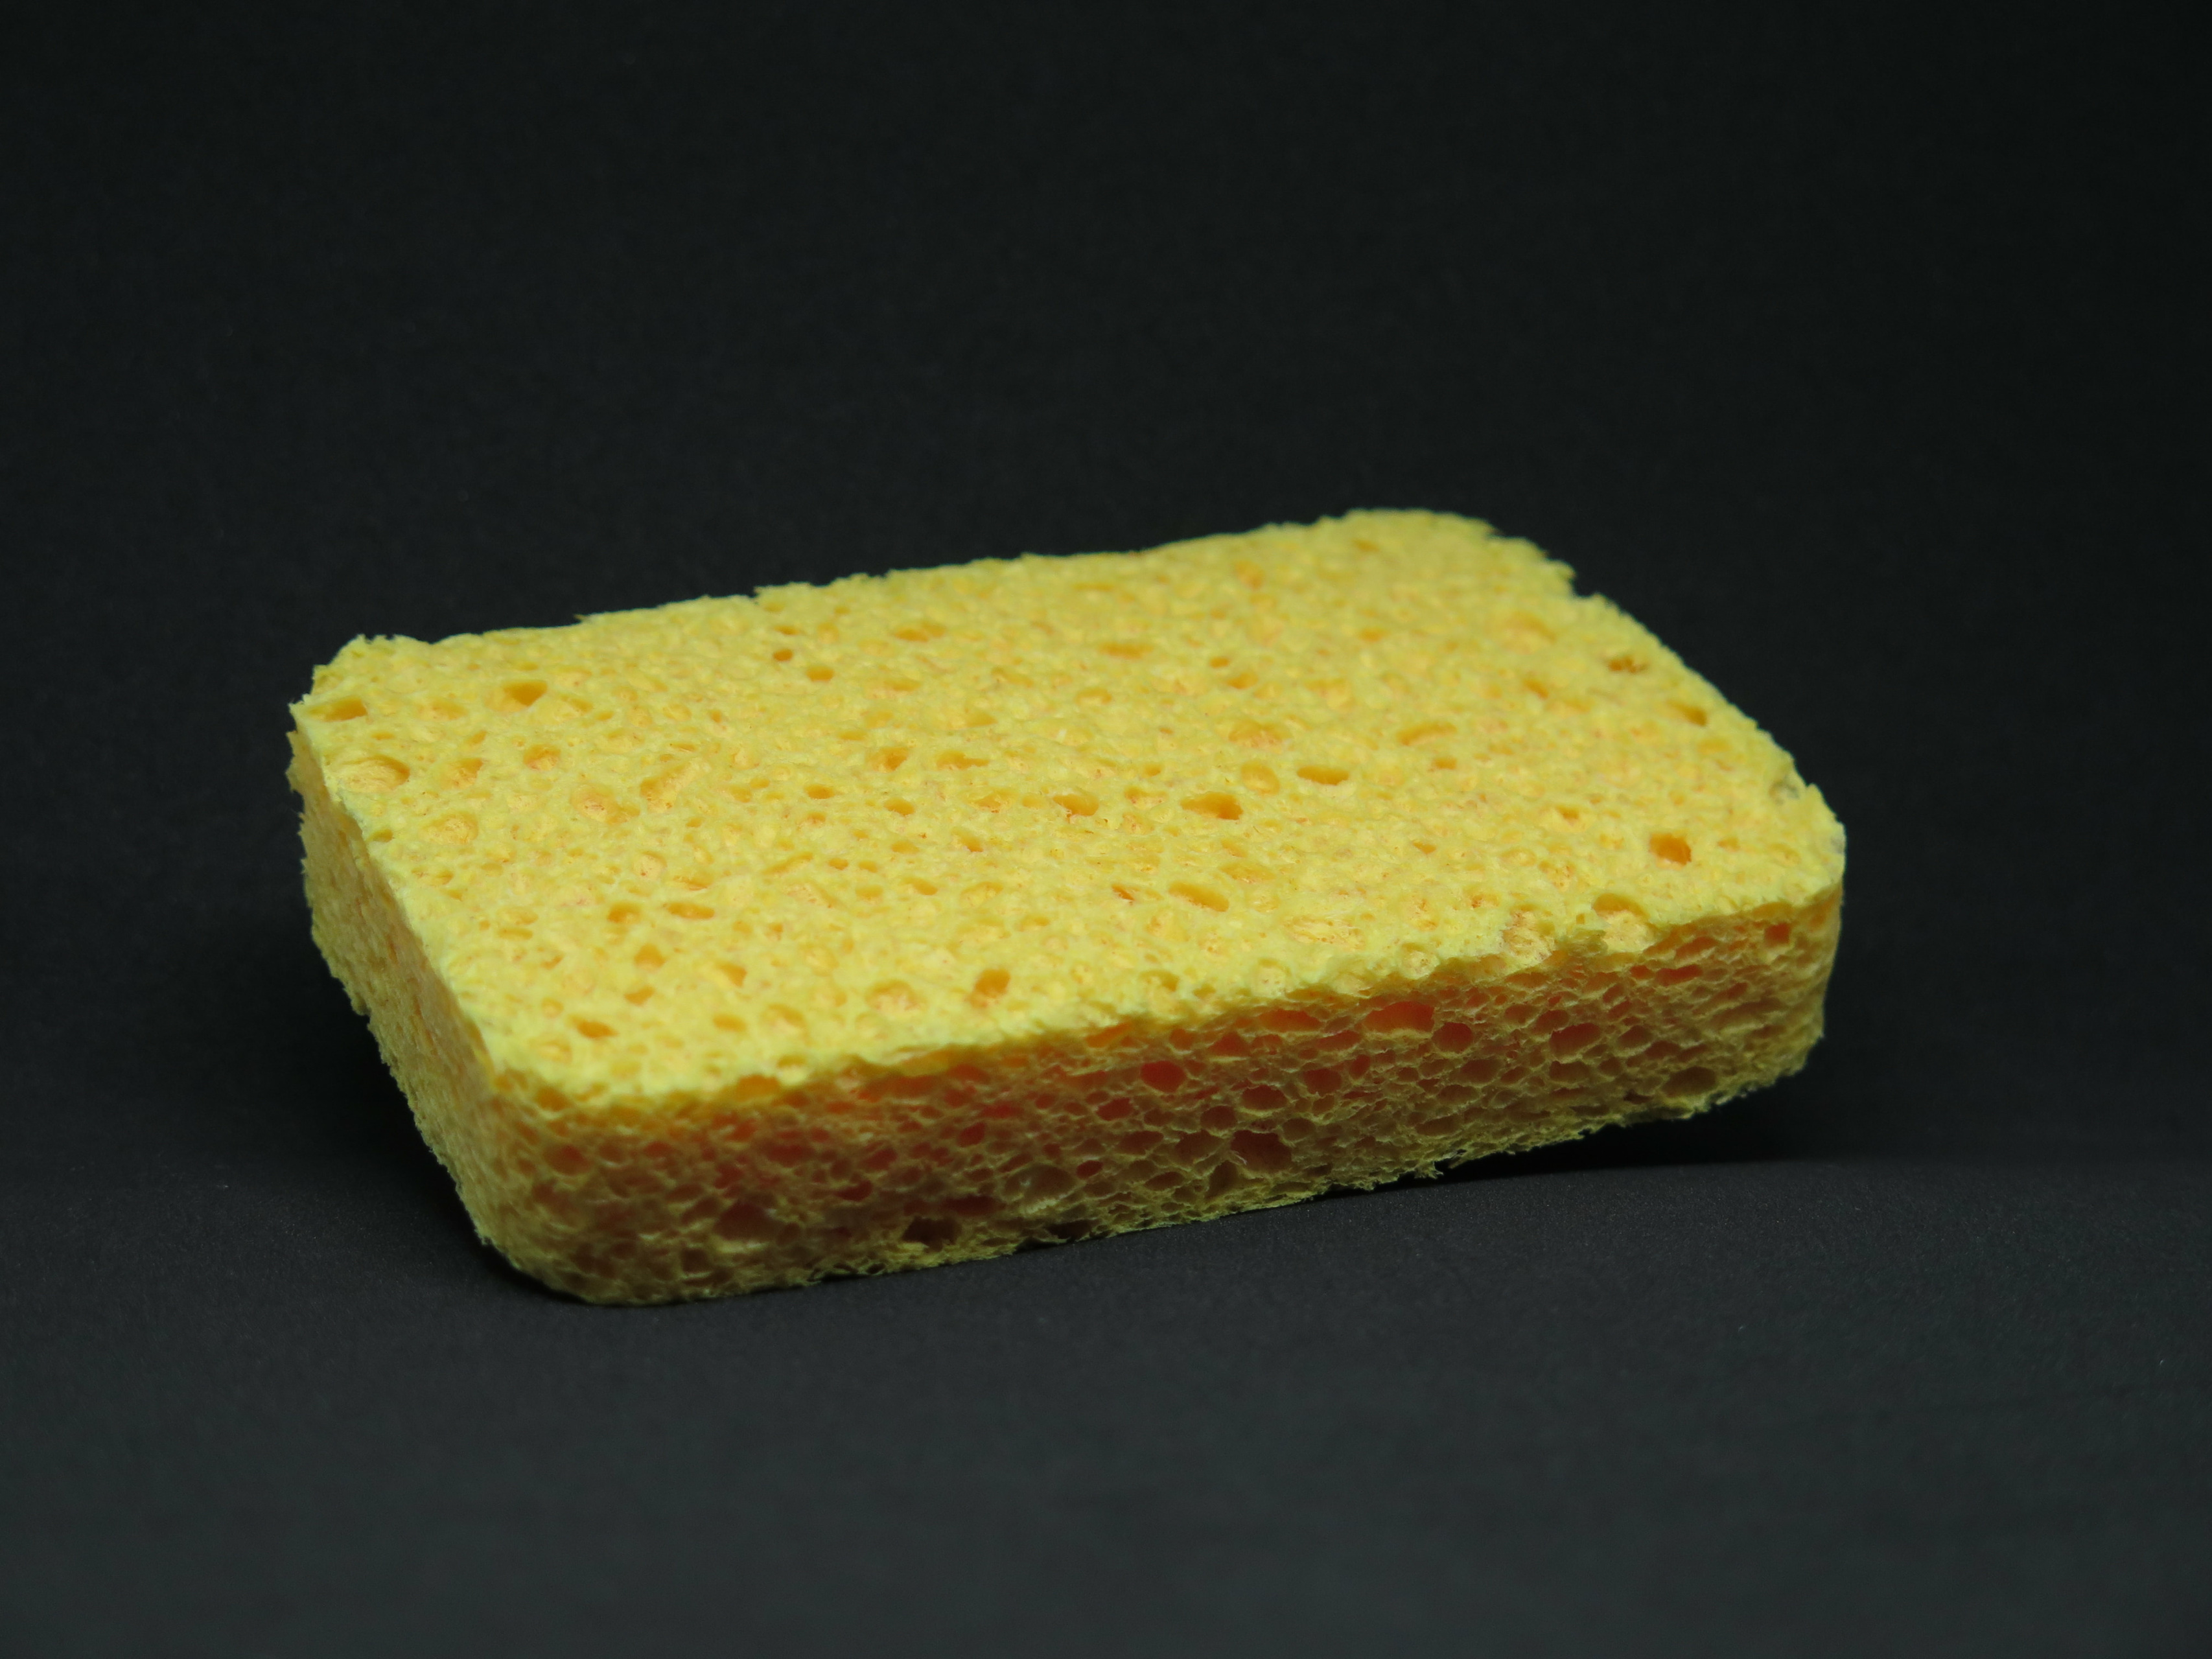 Premium Cellulose Sponge